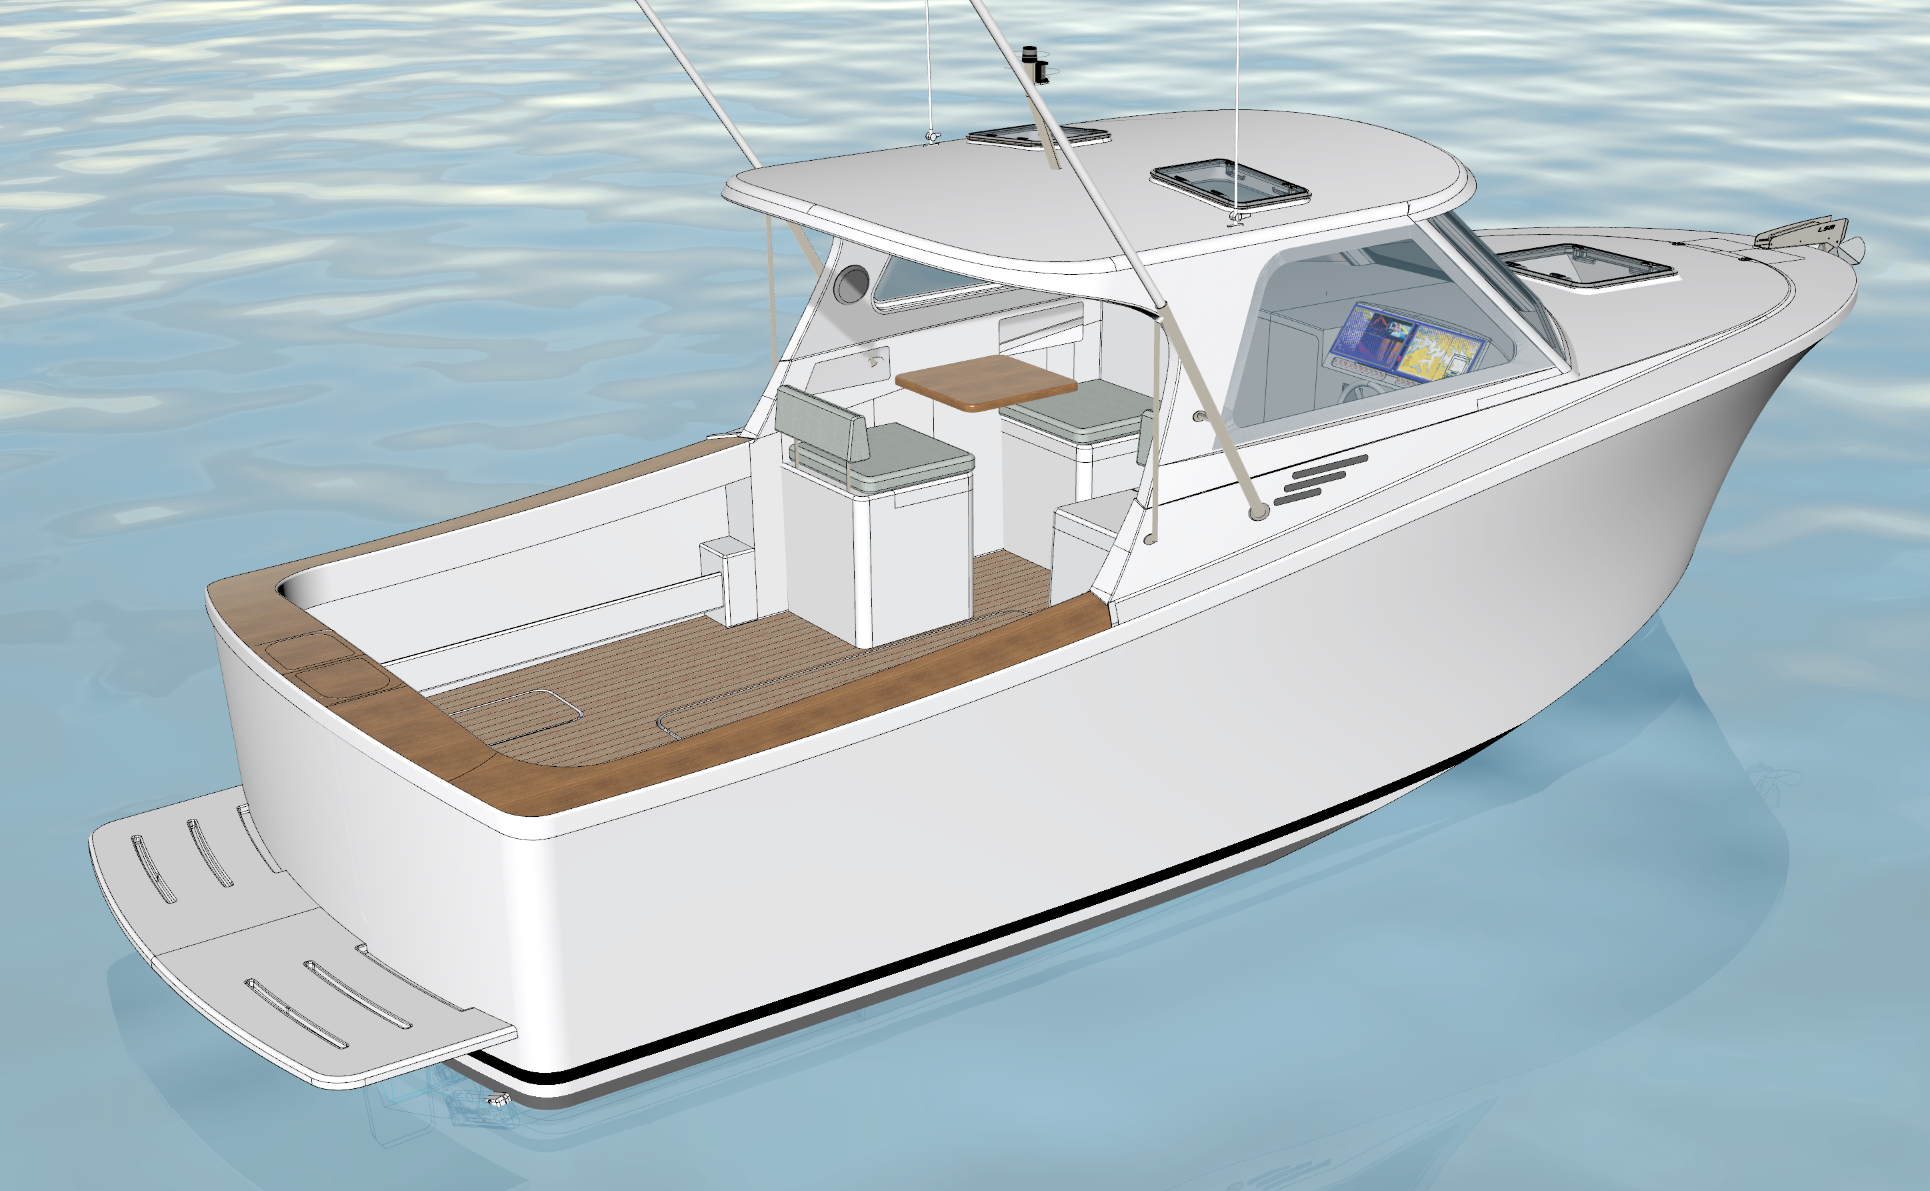 design-087-tasman-8m-sports-fishing-boat-bury-design